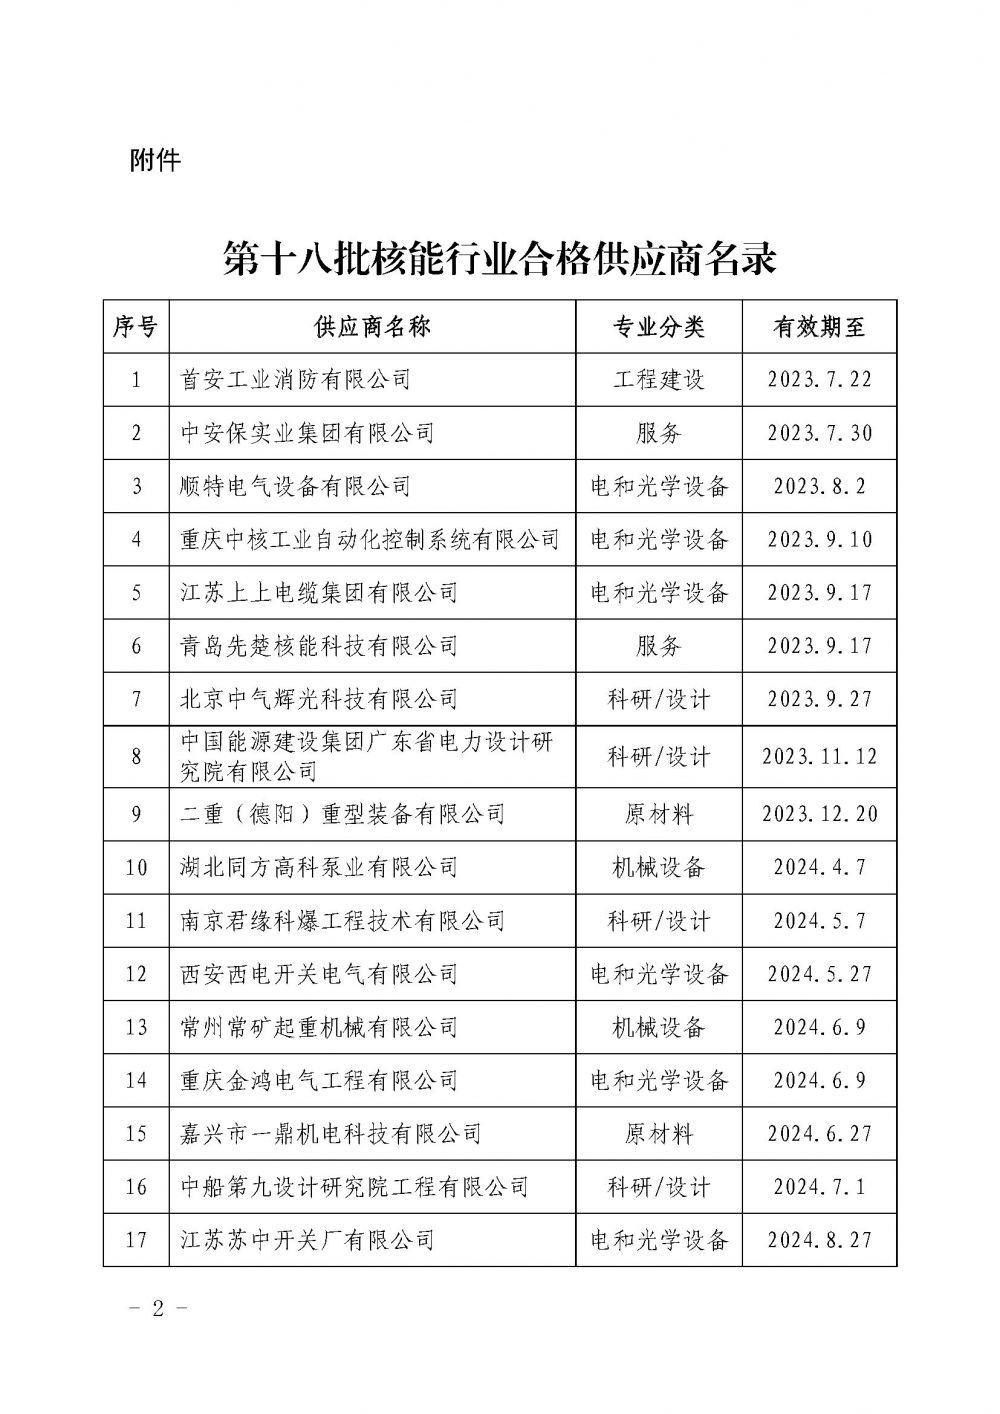 关于发布中国核能行业协会核能行业第十八批合格供应商名录的公告_页面_2.jpg